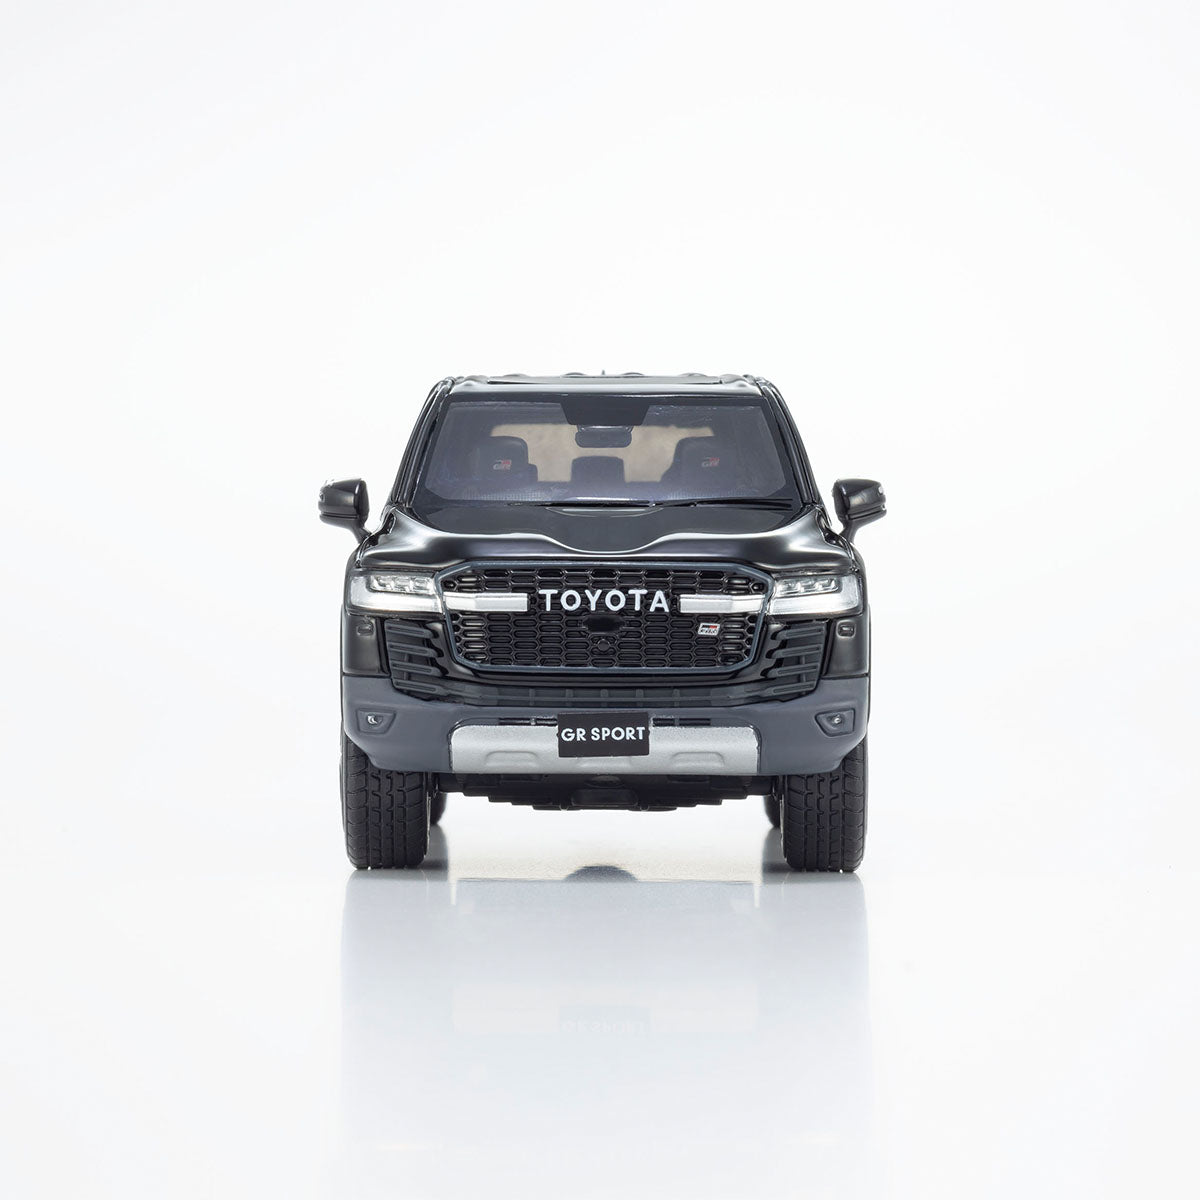 Toyota Land Cruiser GR SPORT  (Black) - 1:43 Scale Resin Model Car